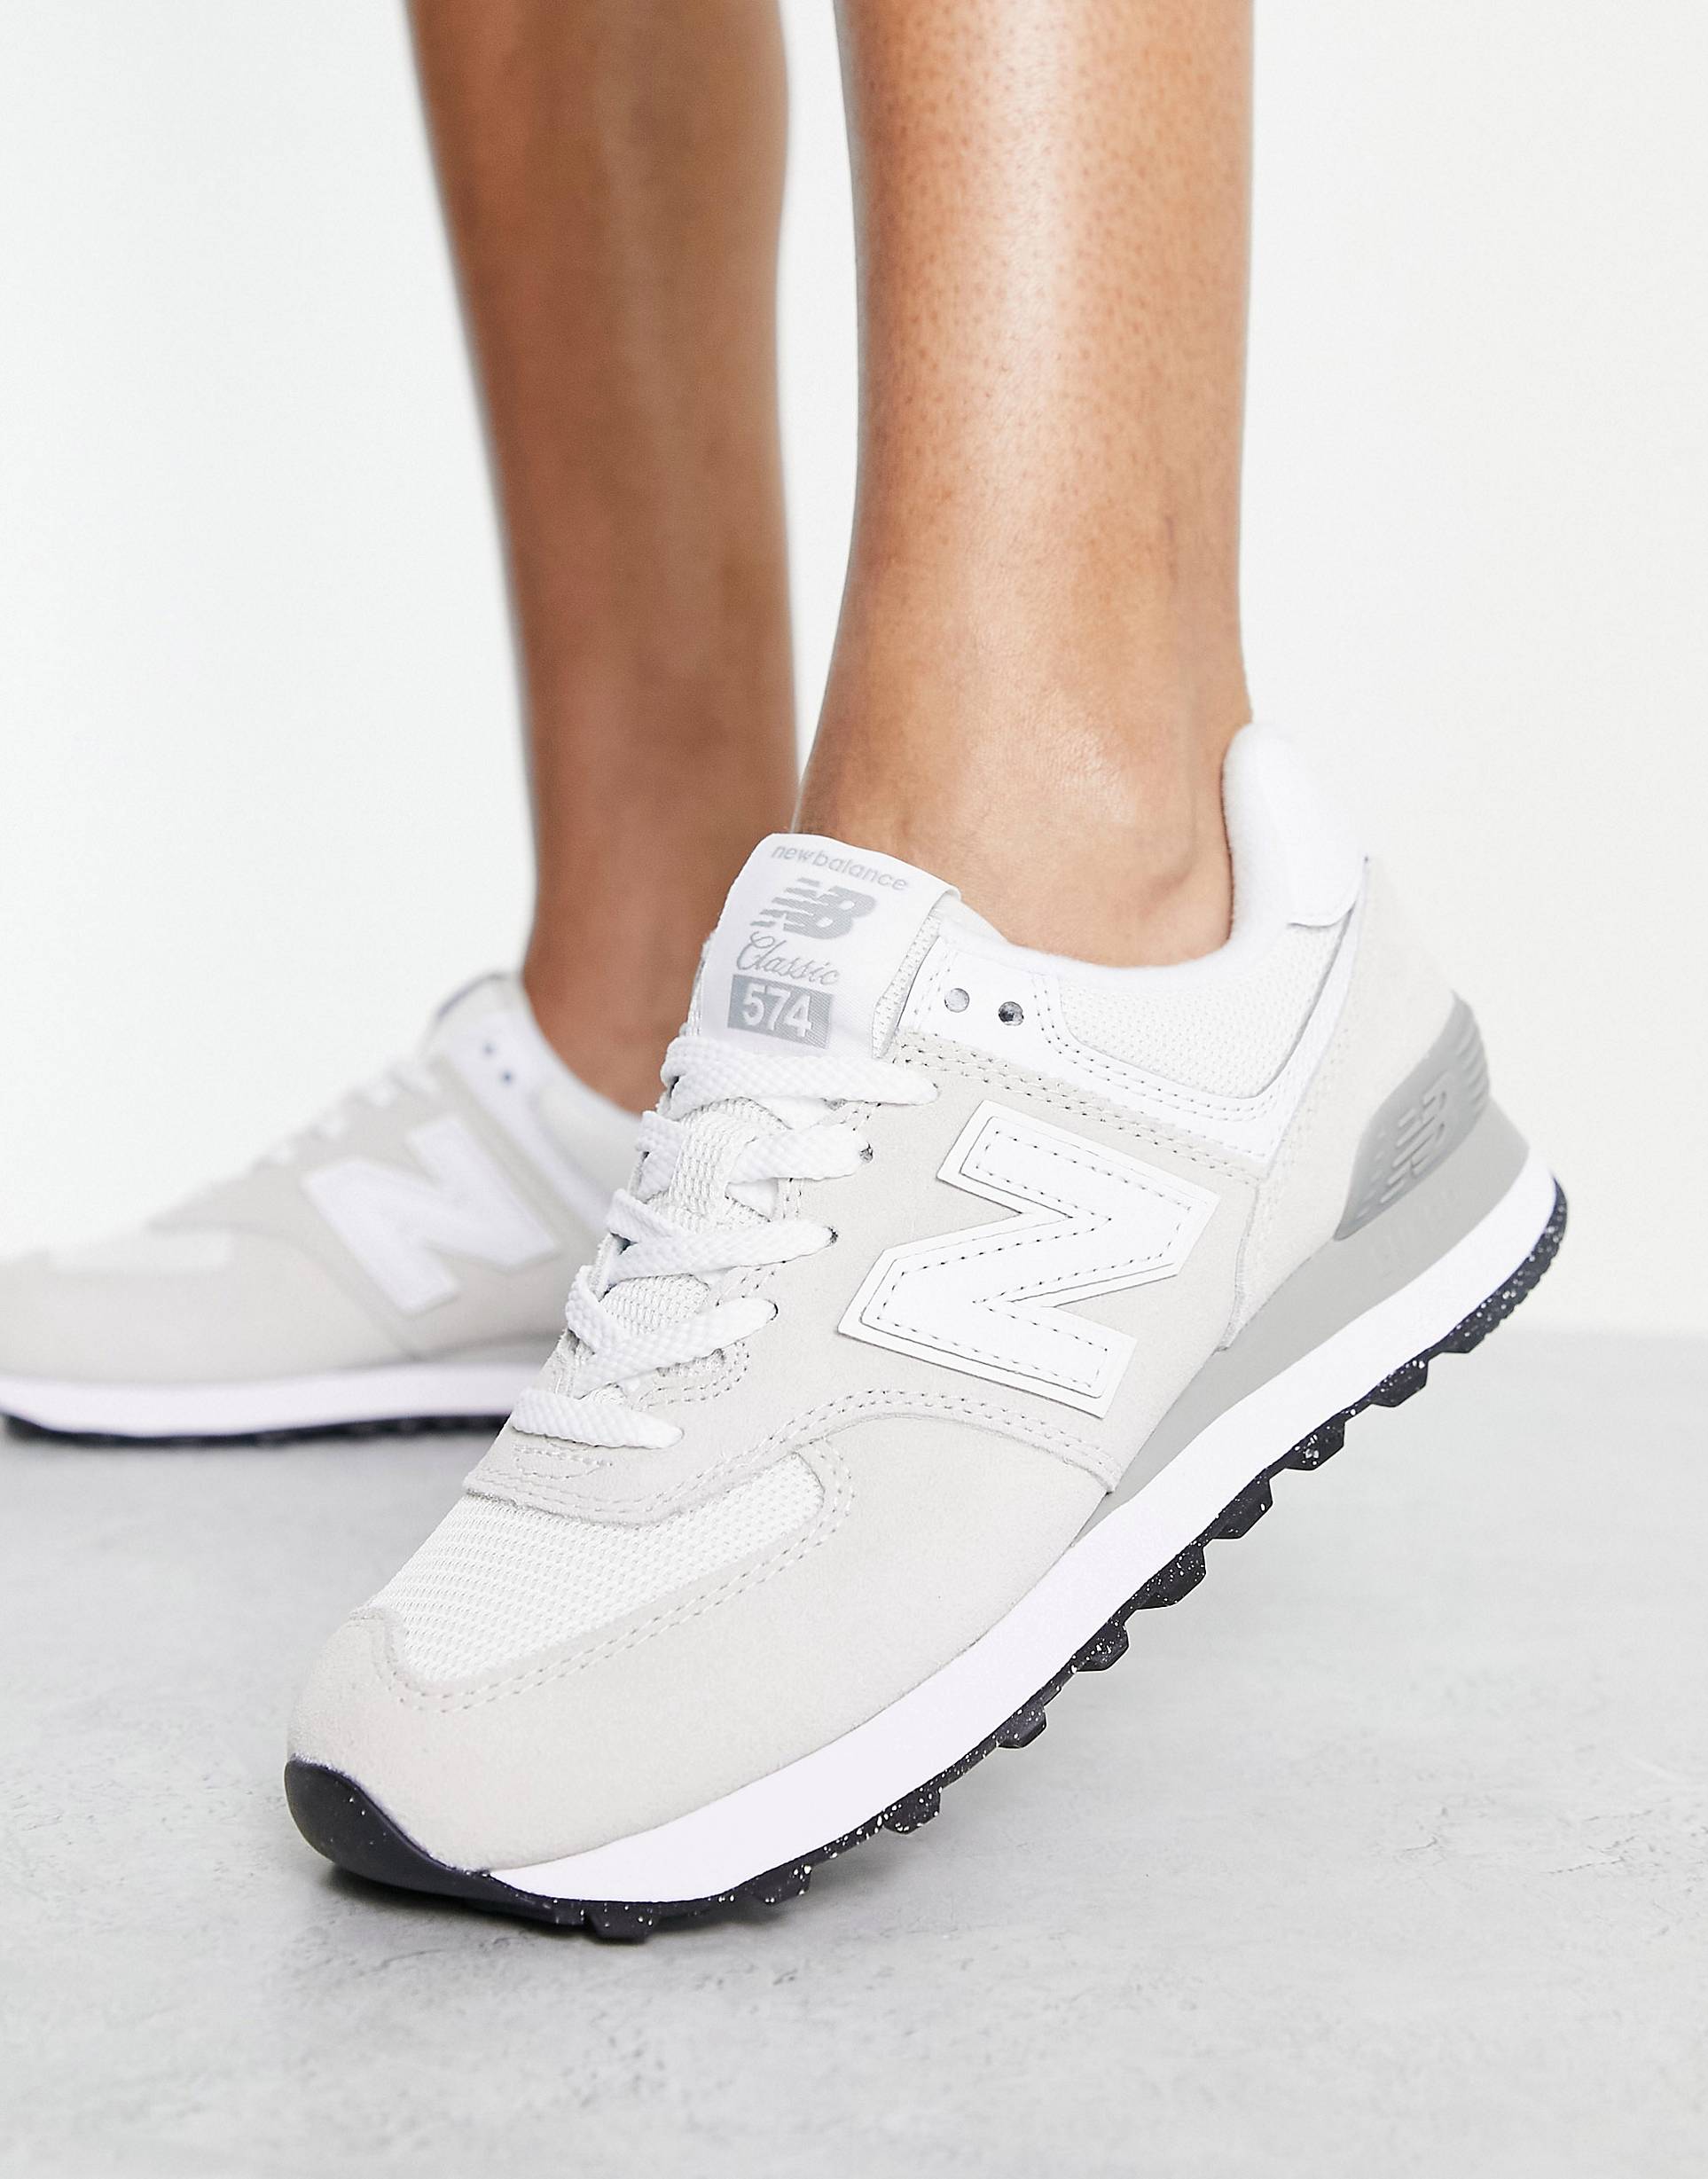 New Balance – 574 – Buty sportowe w metalicznym białym i srebrnym kolorze